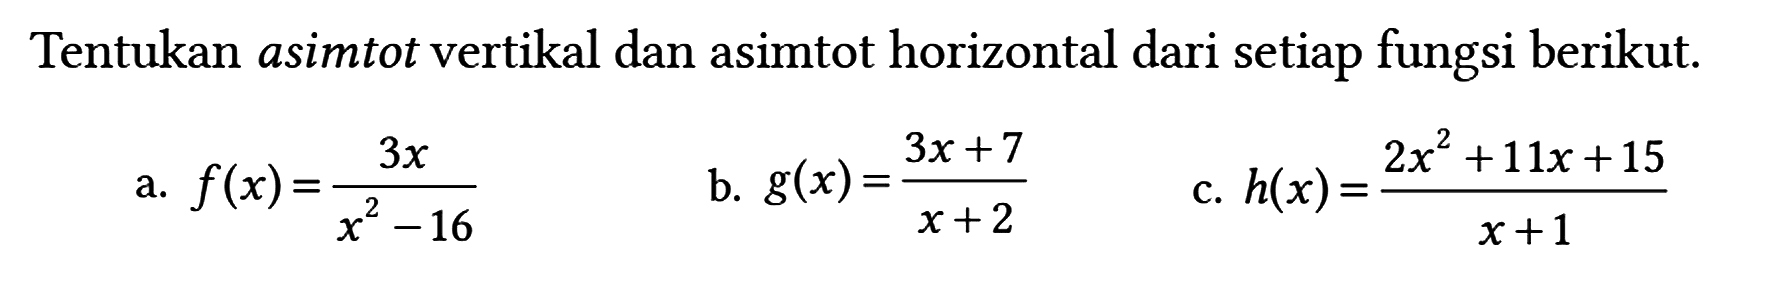 Tentukan asimtot vertikal dan asimtot horizontal dari setiap fungsi berikut.
a. f(x) = 3x/(x^2 - 16) b. g(x) = (3x + 7)/(x + 2) c. h(x) = (2x^2 + 11x + 15)/(x + 1) 